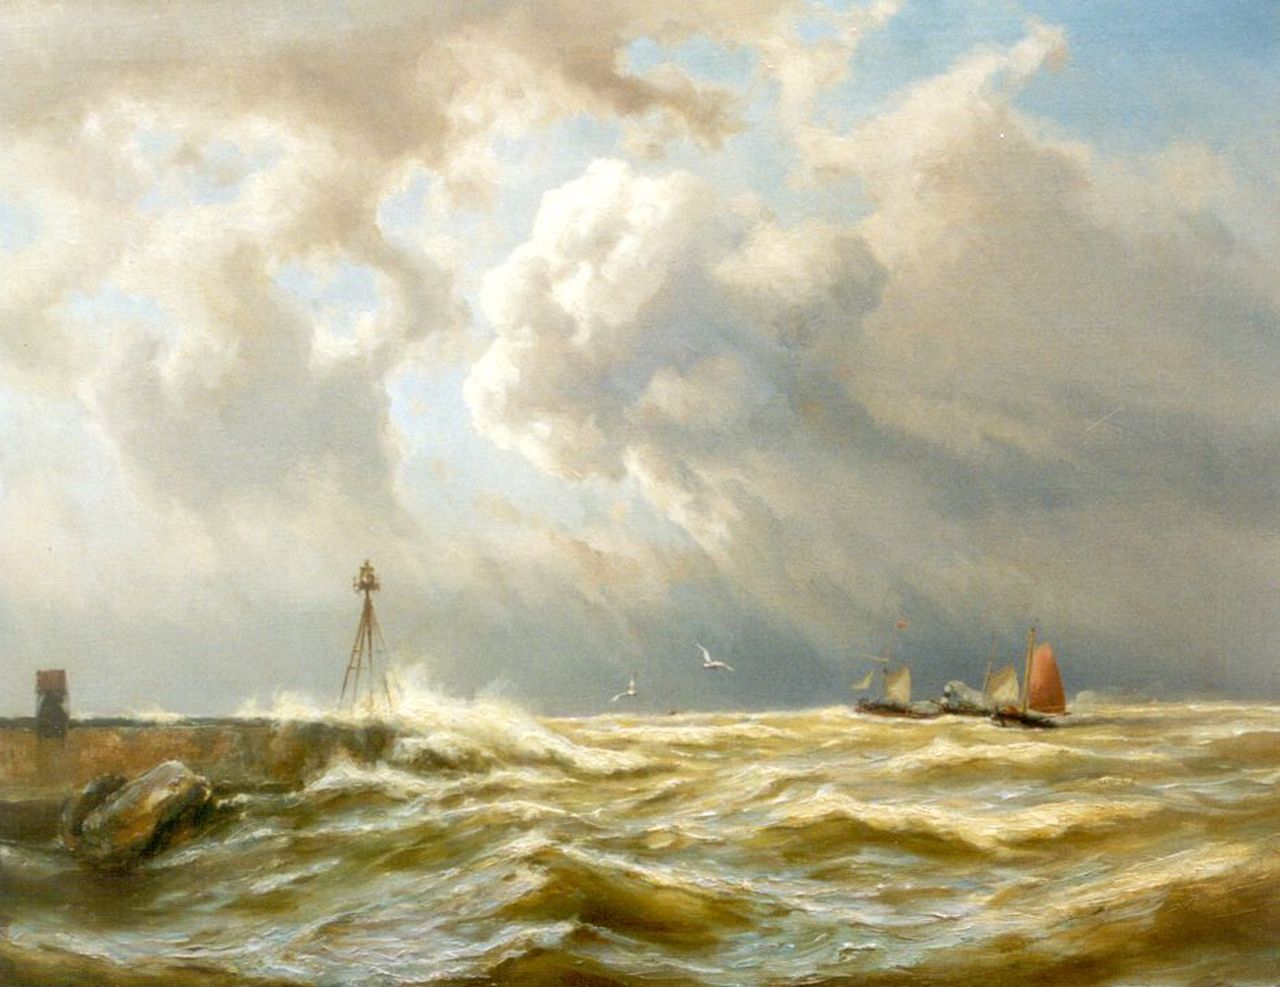 Koekkoek J.H.B.  | Johannes Hermanus Barend 'Jan H.B.' Koekkoek, Zeilschepen en een raderboot bij storm nabij IJmuiden, olieverf op doek 63,5 x 80,5 cm, gesigneerd linksonder